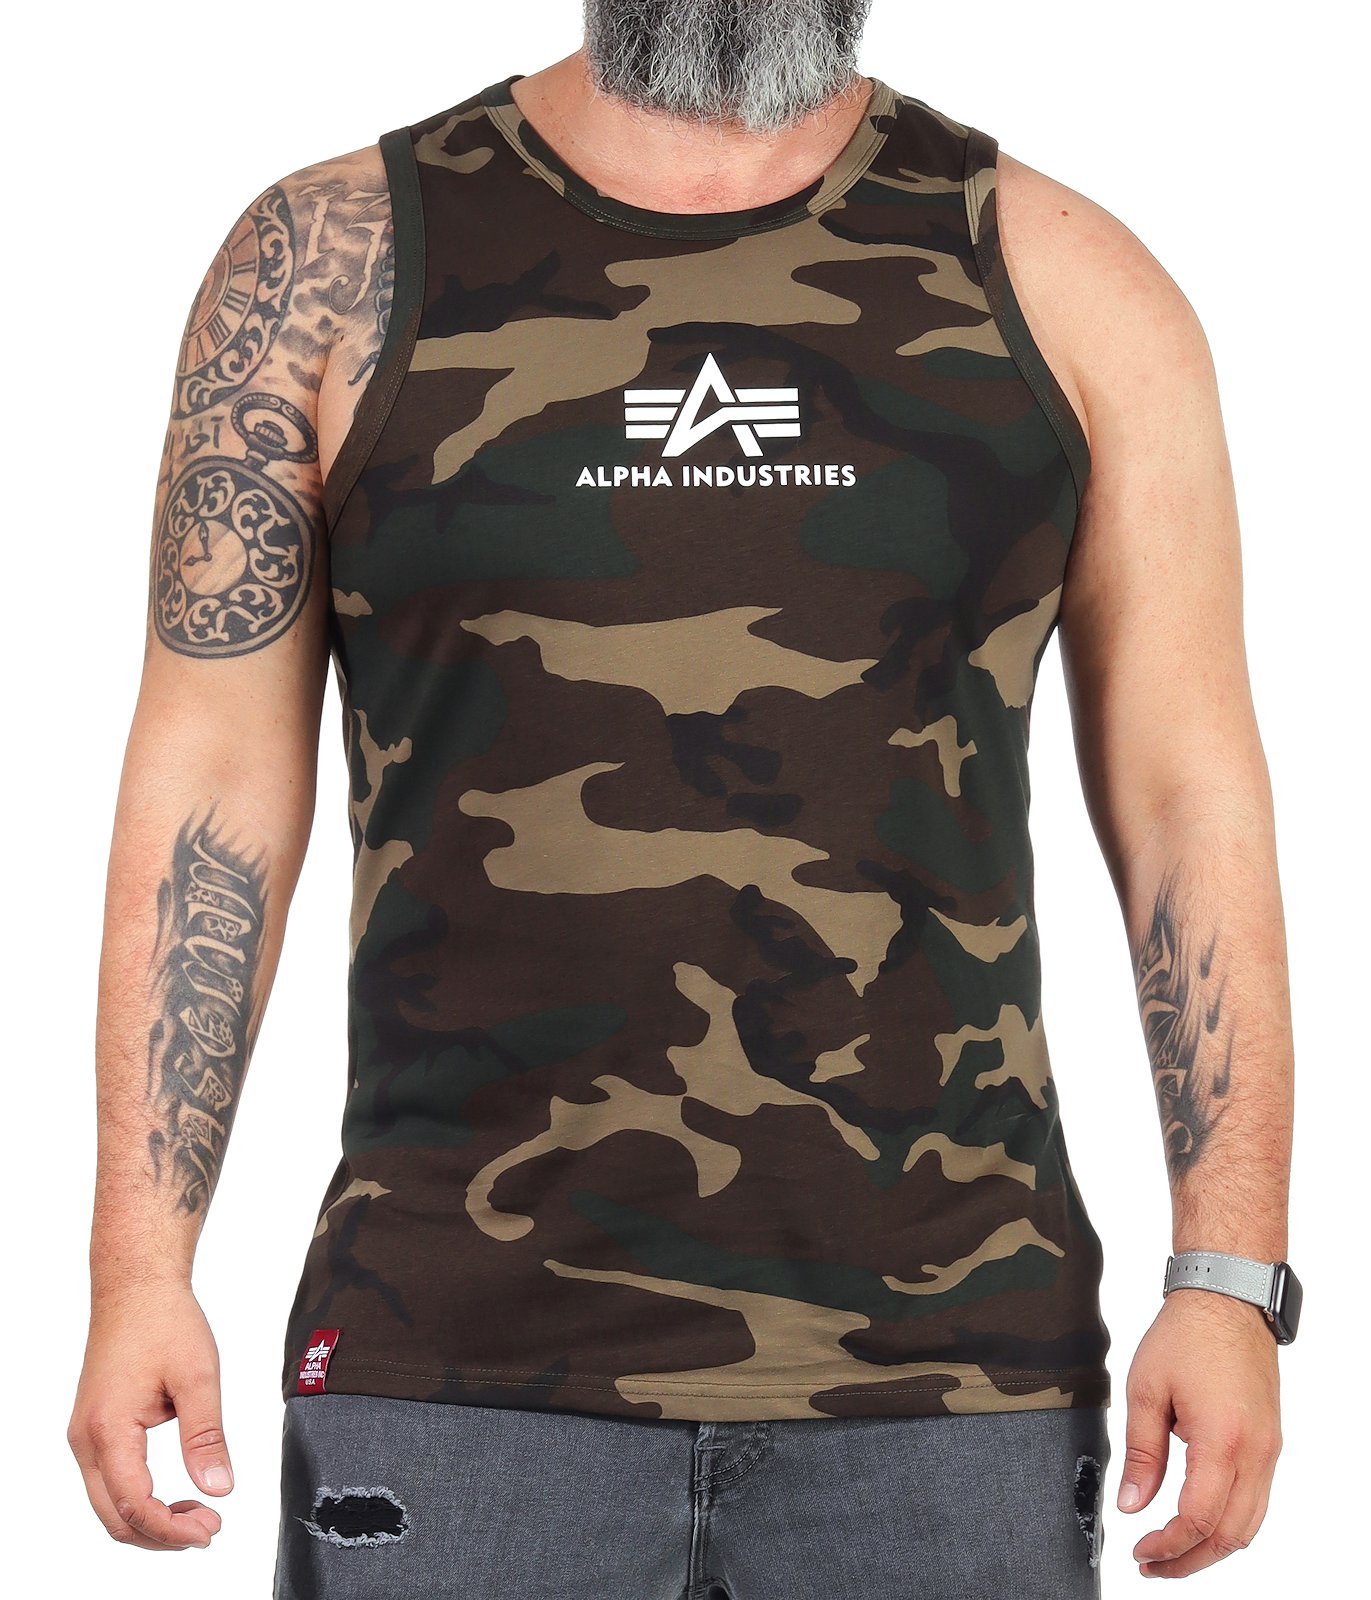 Alpha Industries Herren Tank Top Muskelshirt Achselshirt Shirt Basic 126566  | eBay